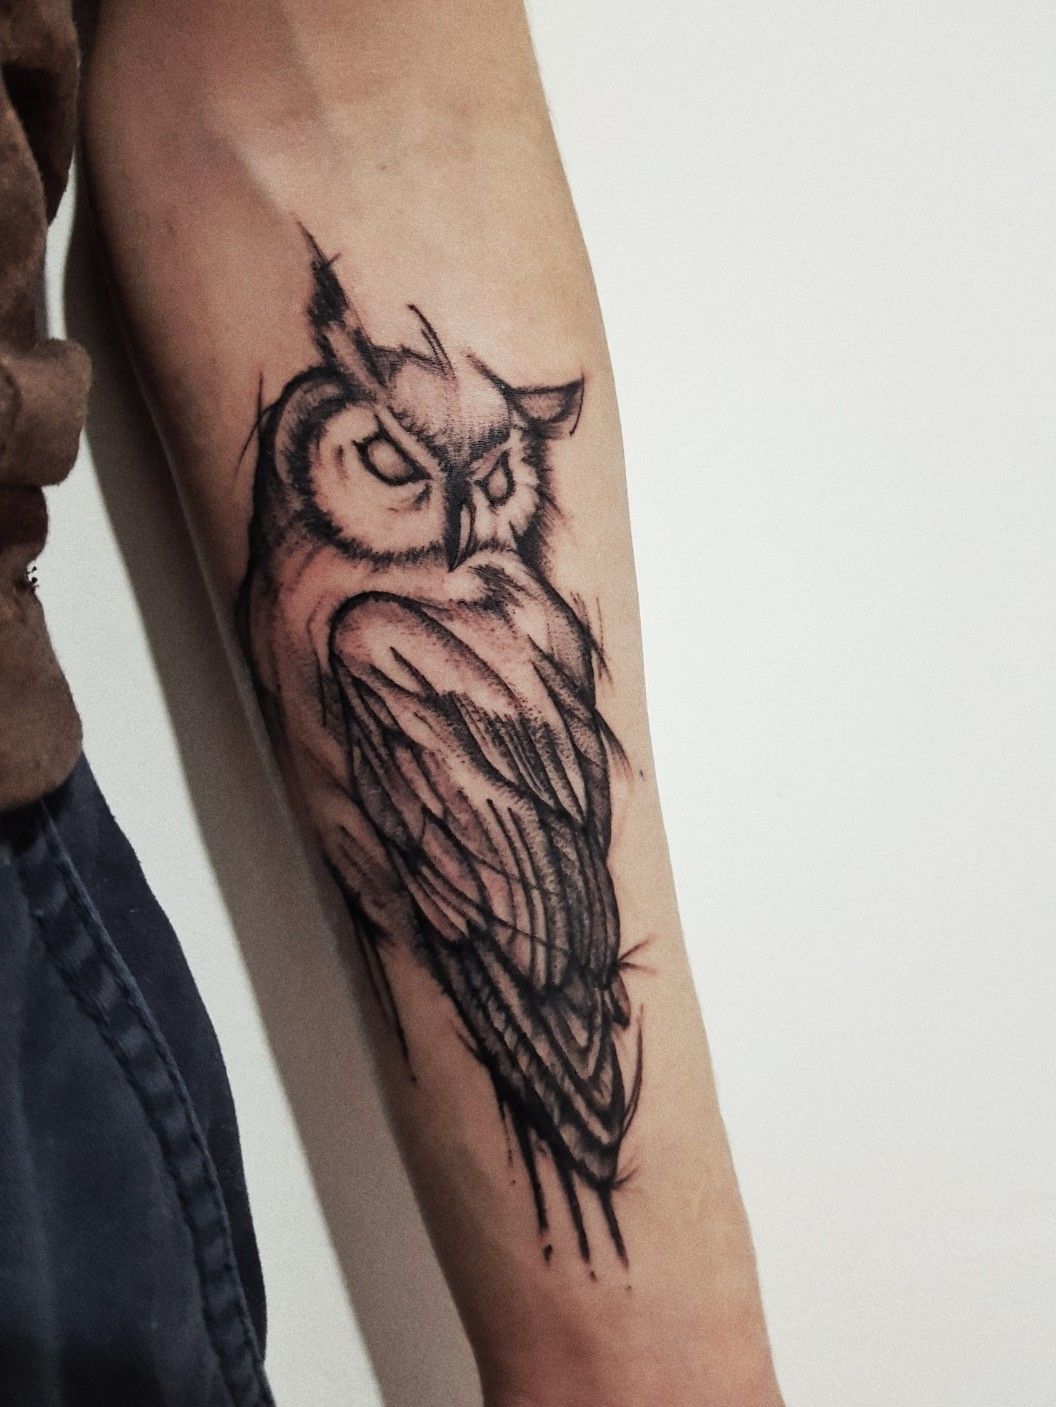 Explore the 39 Best Owl Tattoo Ideas March 2019  Tattoodo